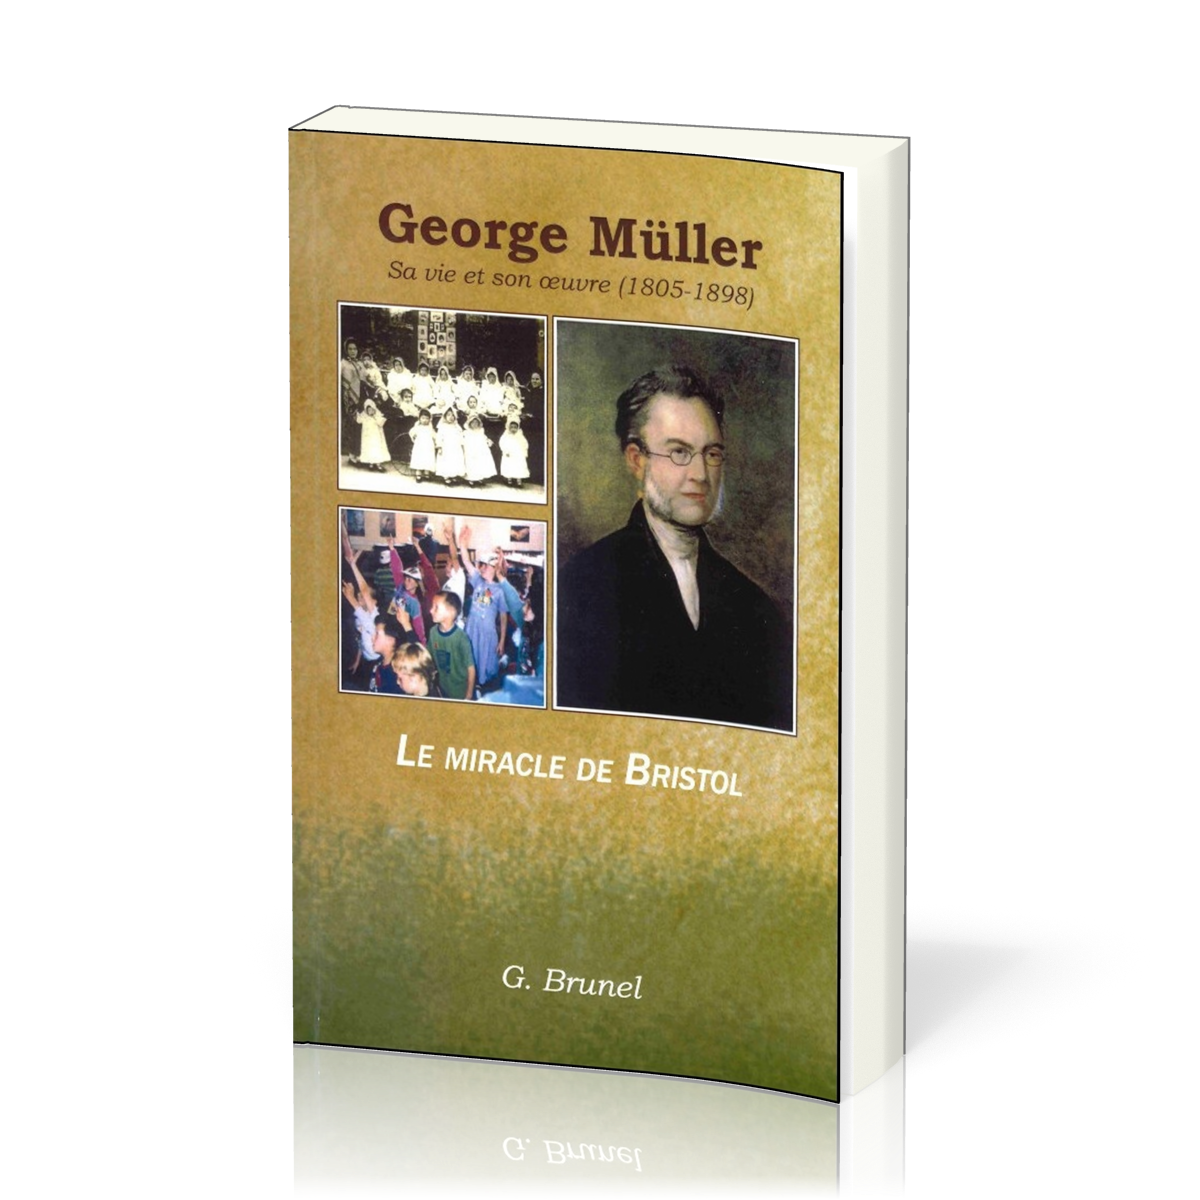 George Müller, sa vie et son oeuvre (1805-1898) - Le miracle de Bristol